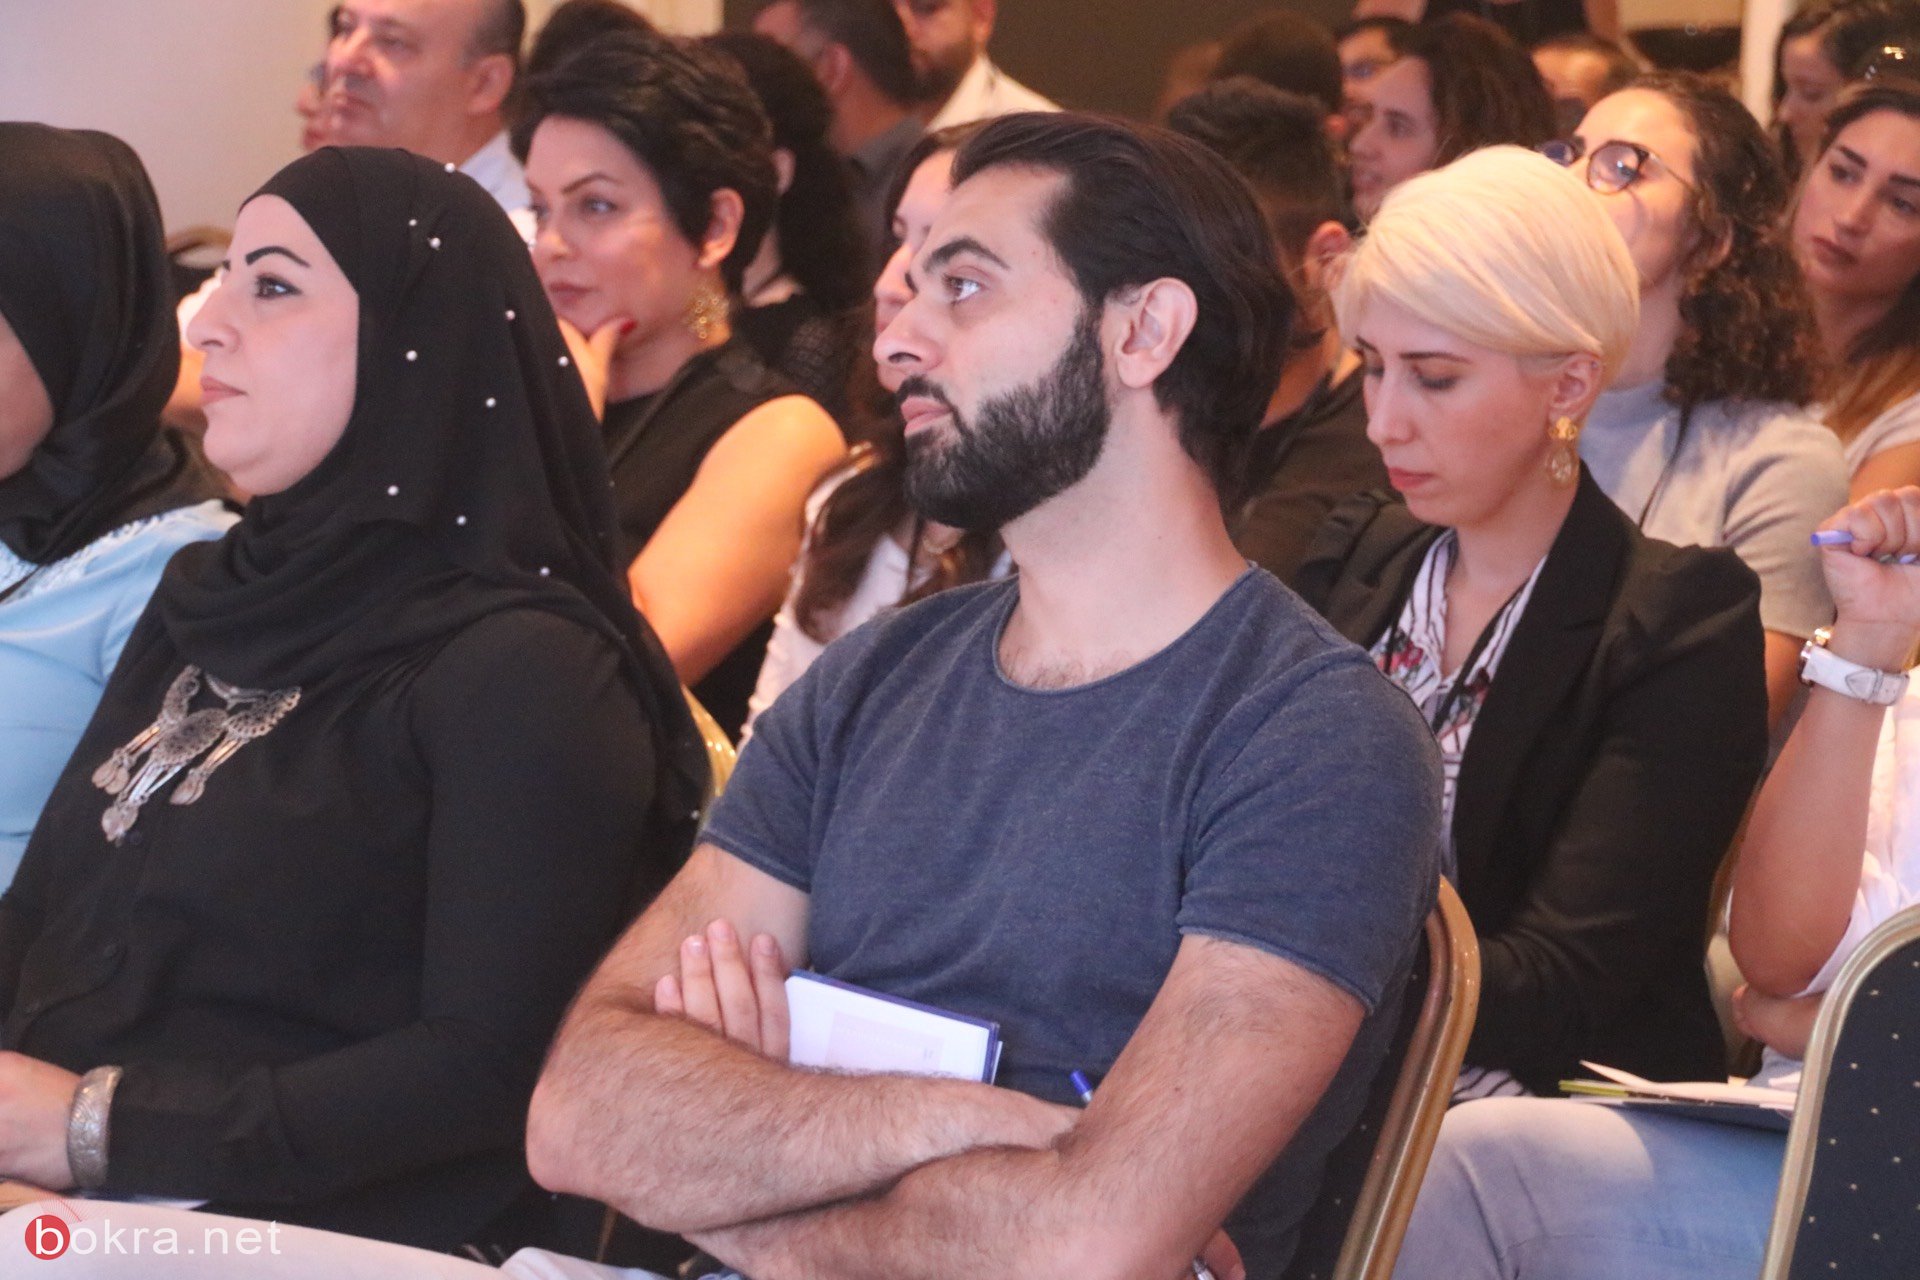 حيفا: مشاركة واسعة في مؤتمر "وصول" حول آخر التطورات في قنوات التسويق الرقمي-7